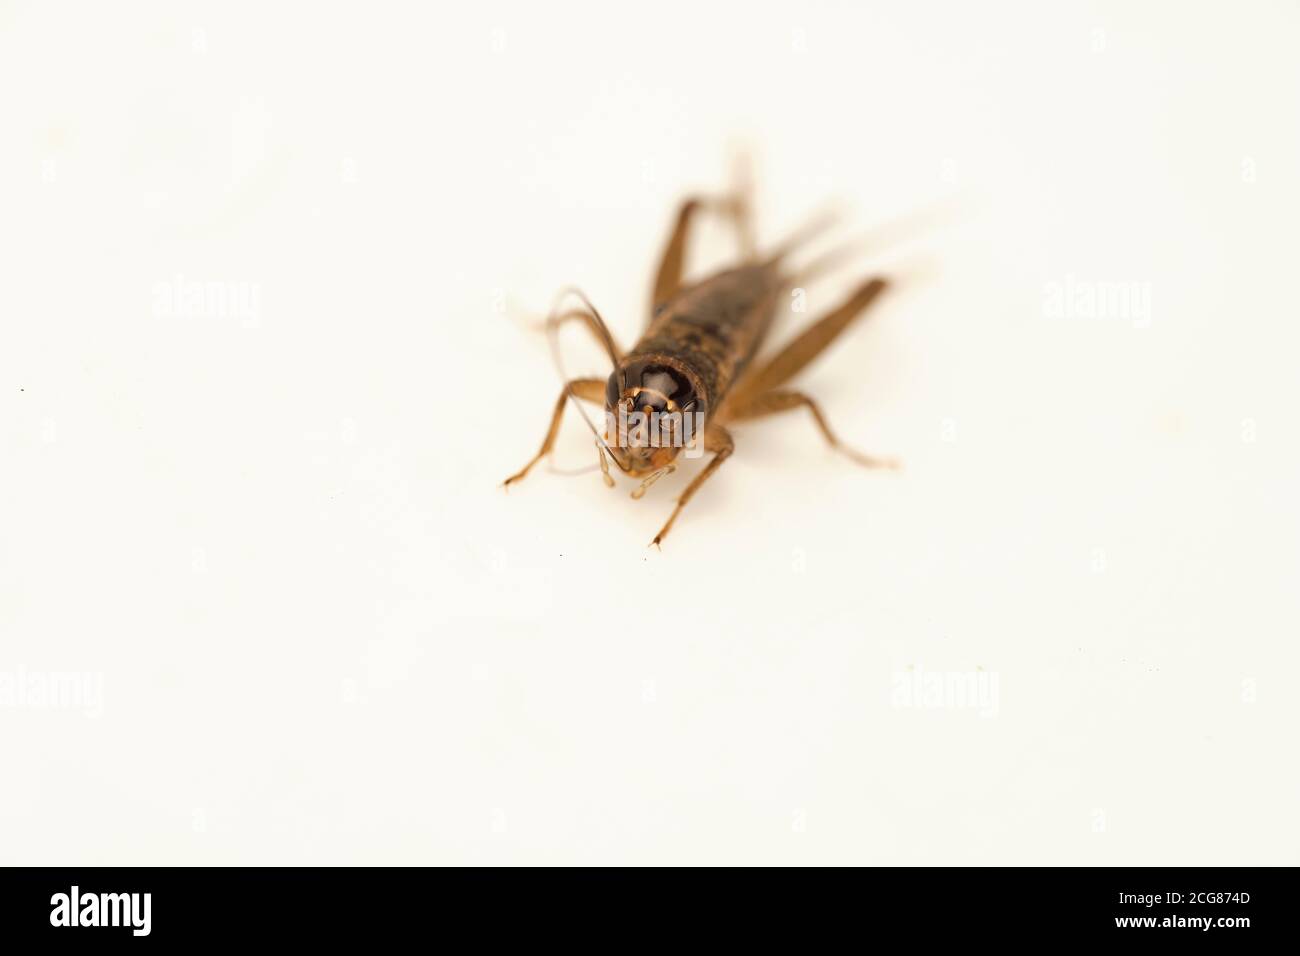 Un insecte de cricket isolé sur fond blanc Banque D'Images